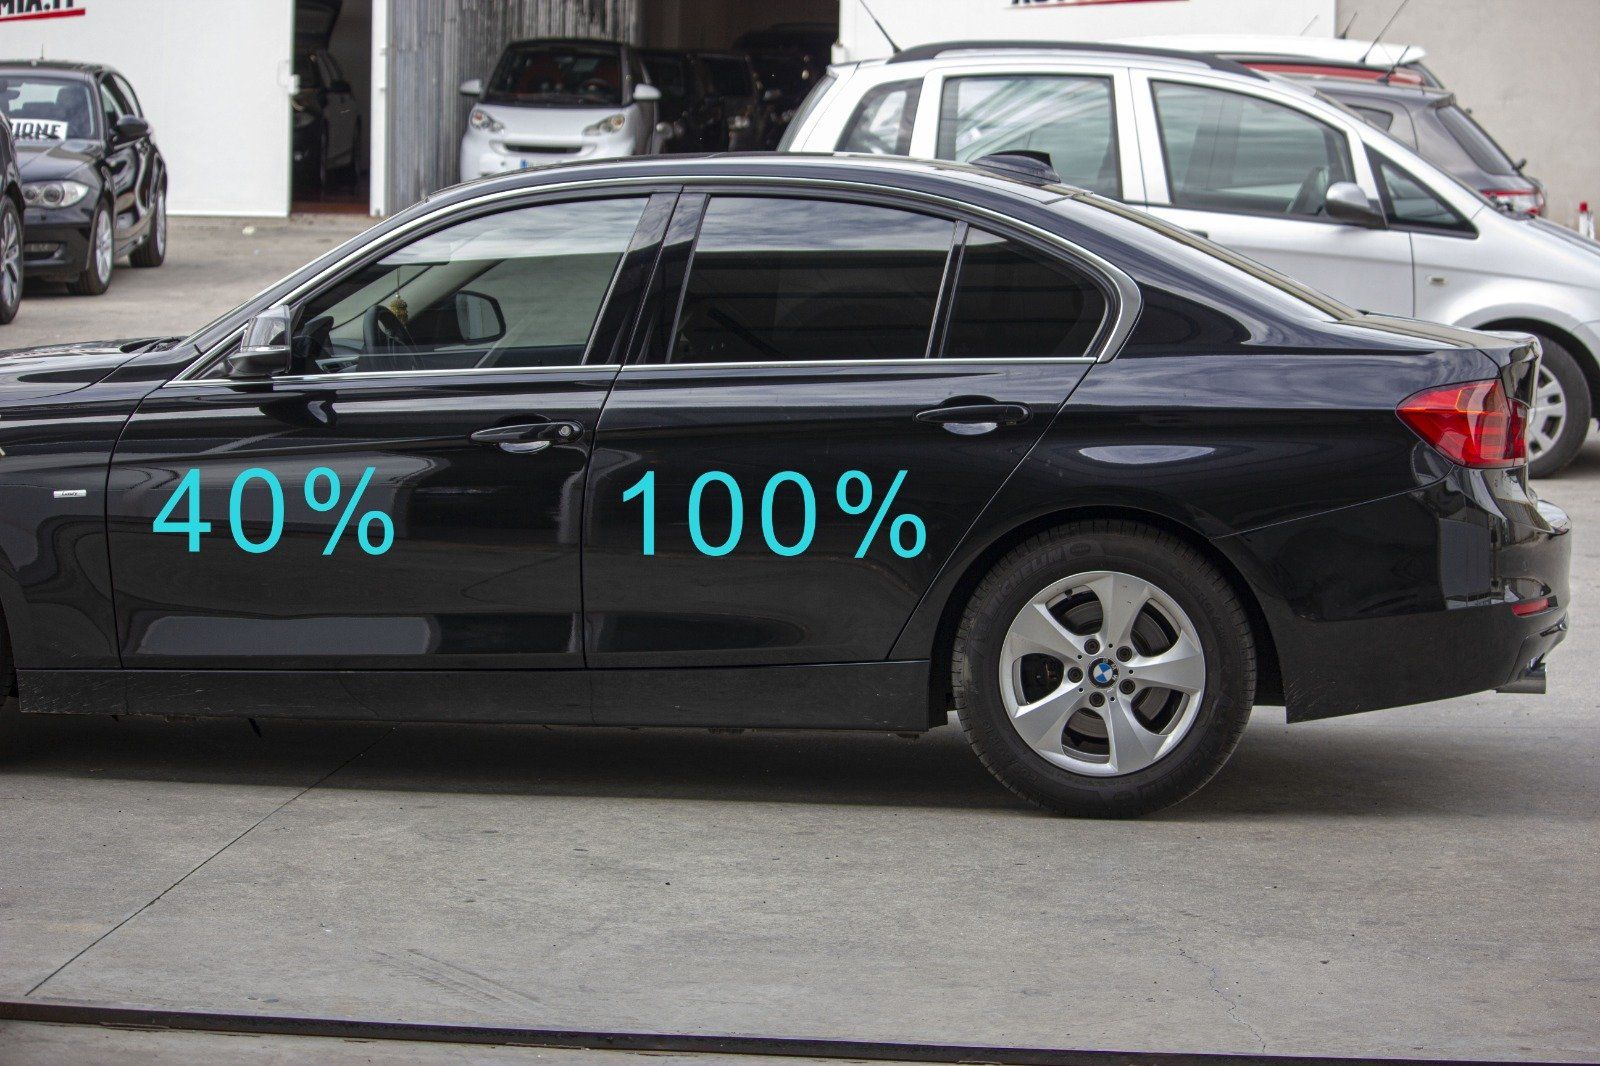 Gradazione  tonalità oscuramento vetri auto con pellicole oscuranti al 100% scuro  BMW Serie 3 Berlina 4 porte del 2019